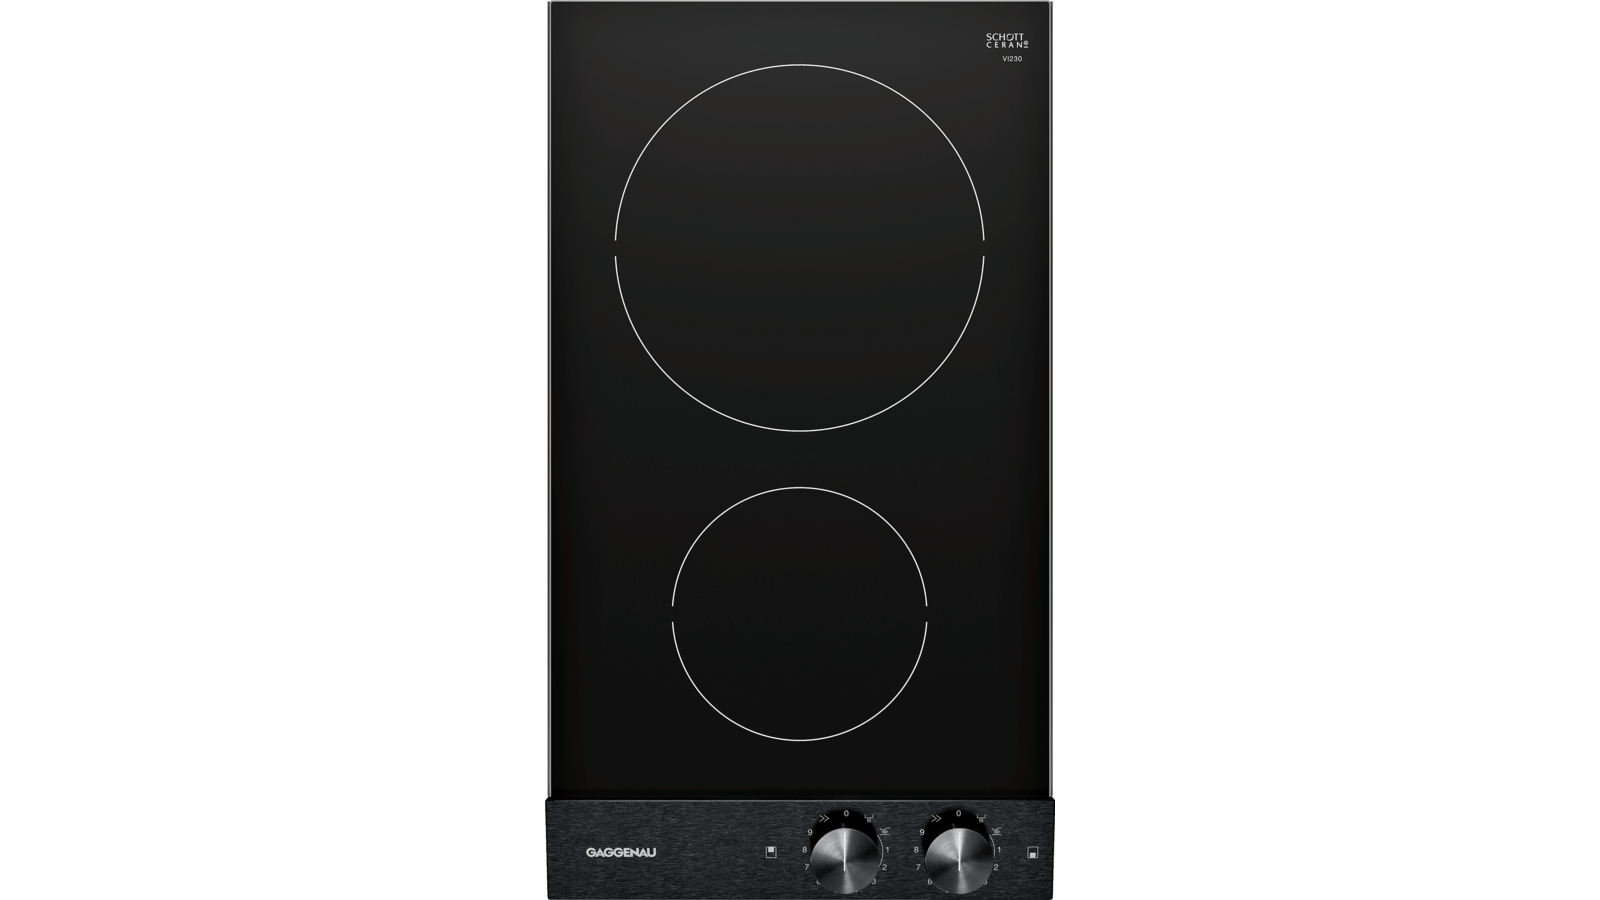 GAGGENAU 12'' Built-in Electric Cooktop - VR230620